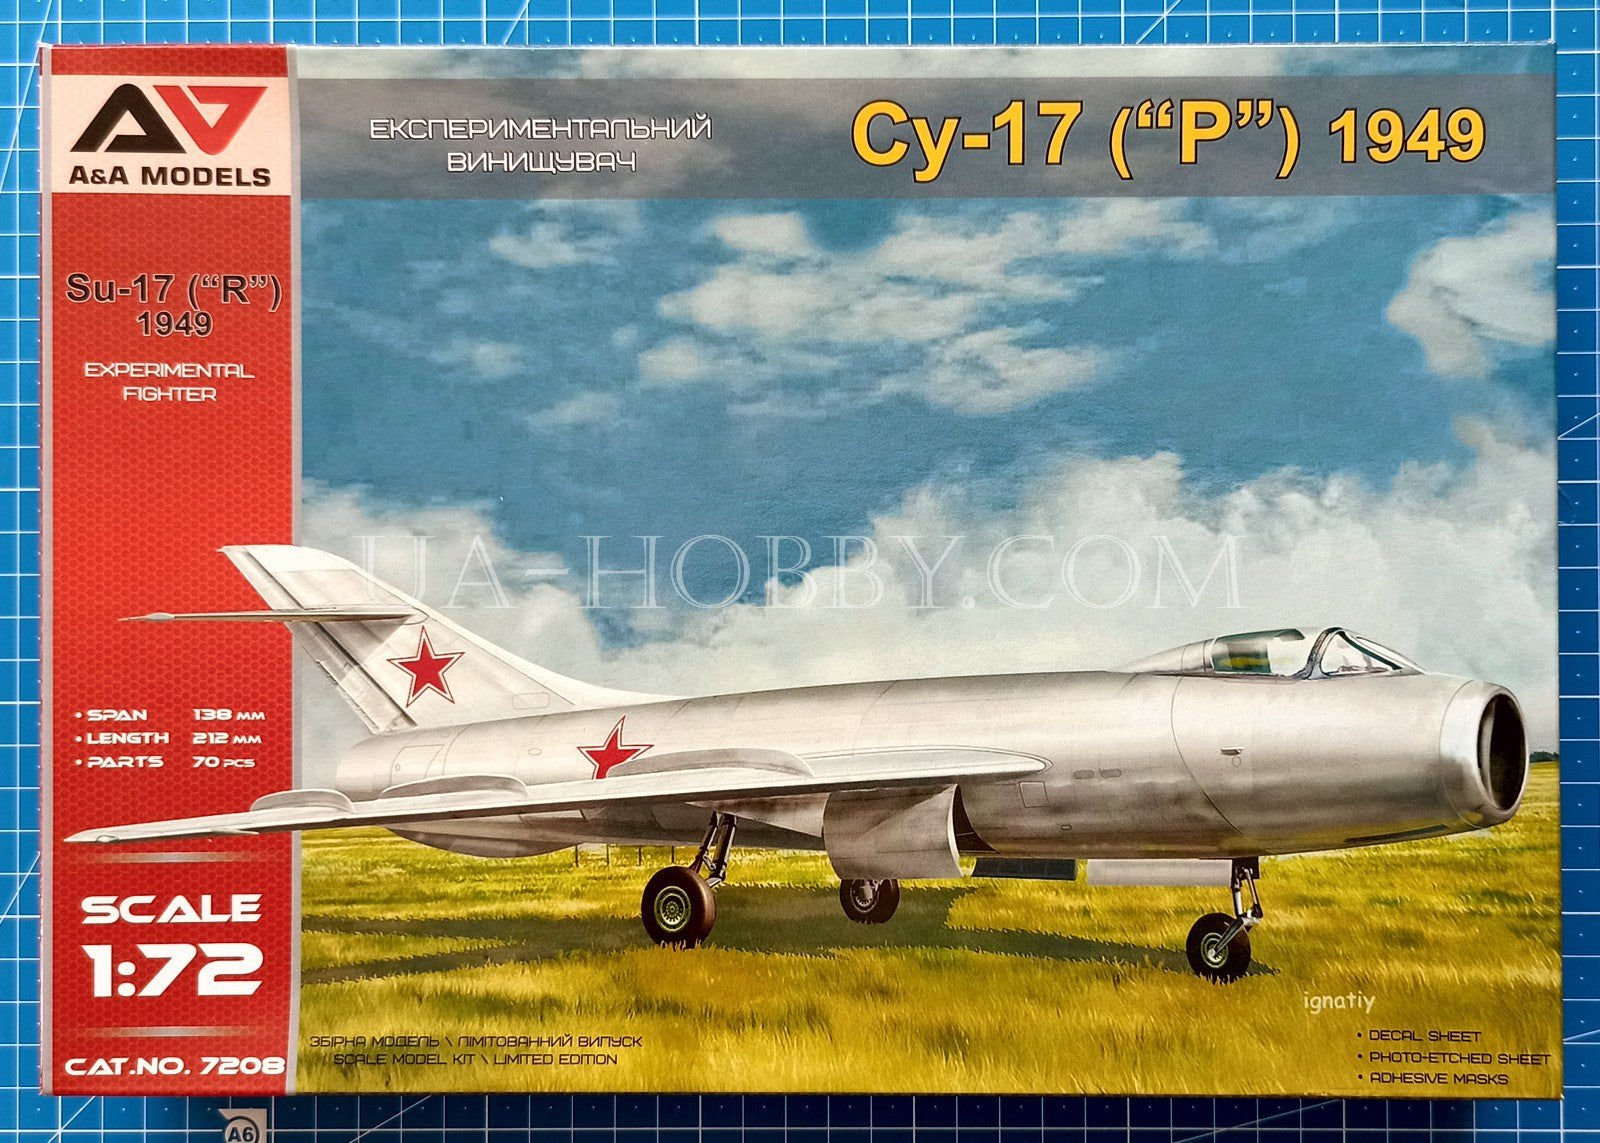 1/72 Sukhoi Su-17 ("R") 1949. A&A Models 7208